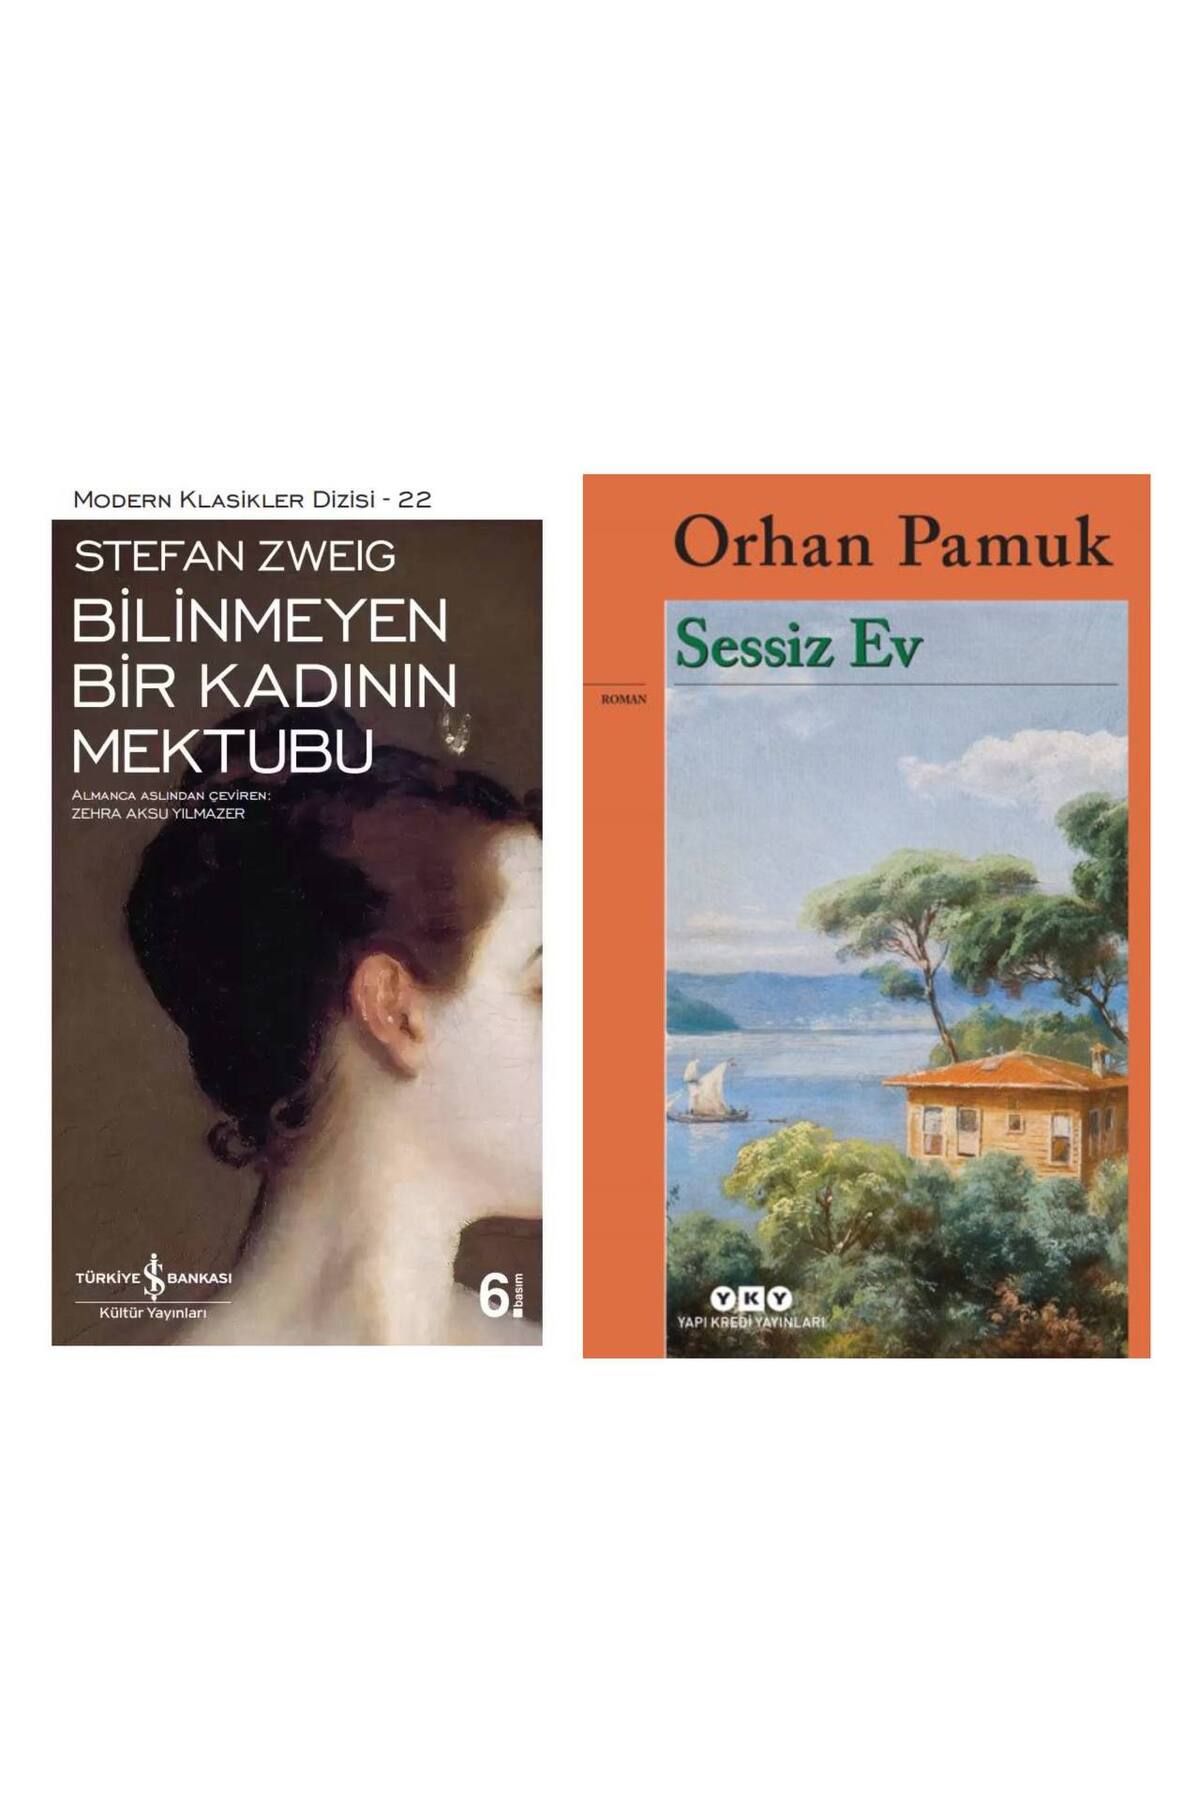 Türkiye İş Bankası Kültür Yayınları Bilinmeyen Bir Kadının Mektubu - Sessiz Ev Orhan Pamuk